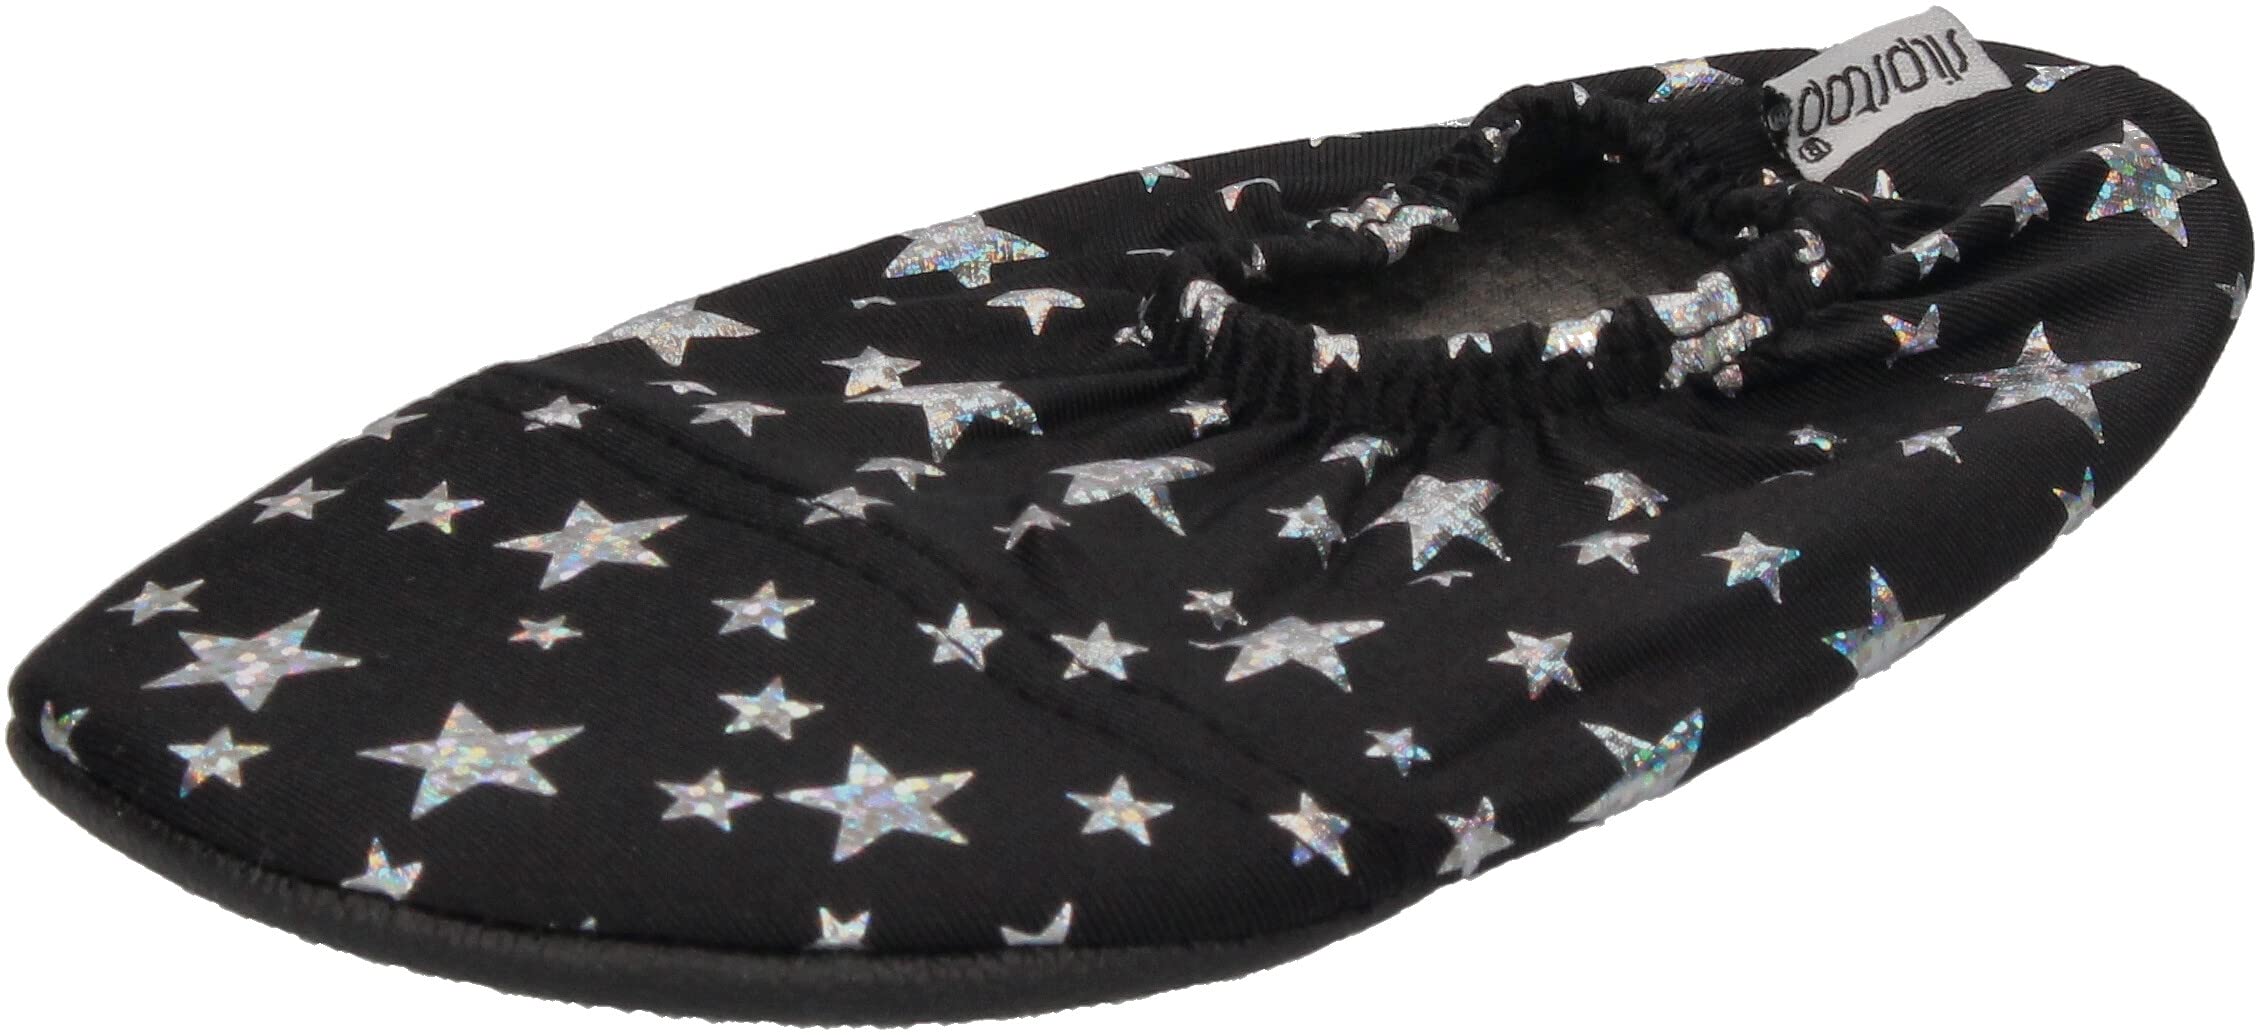 Slipstop - Hausschuhe Badeschuhe Bright Sterne schwarz, Größe:24/26 EU